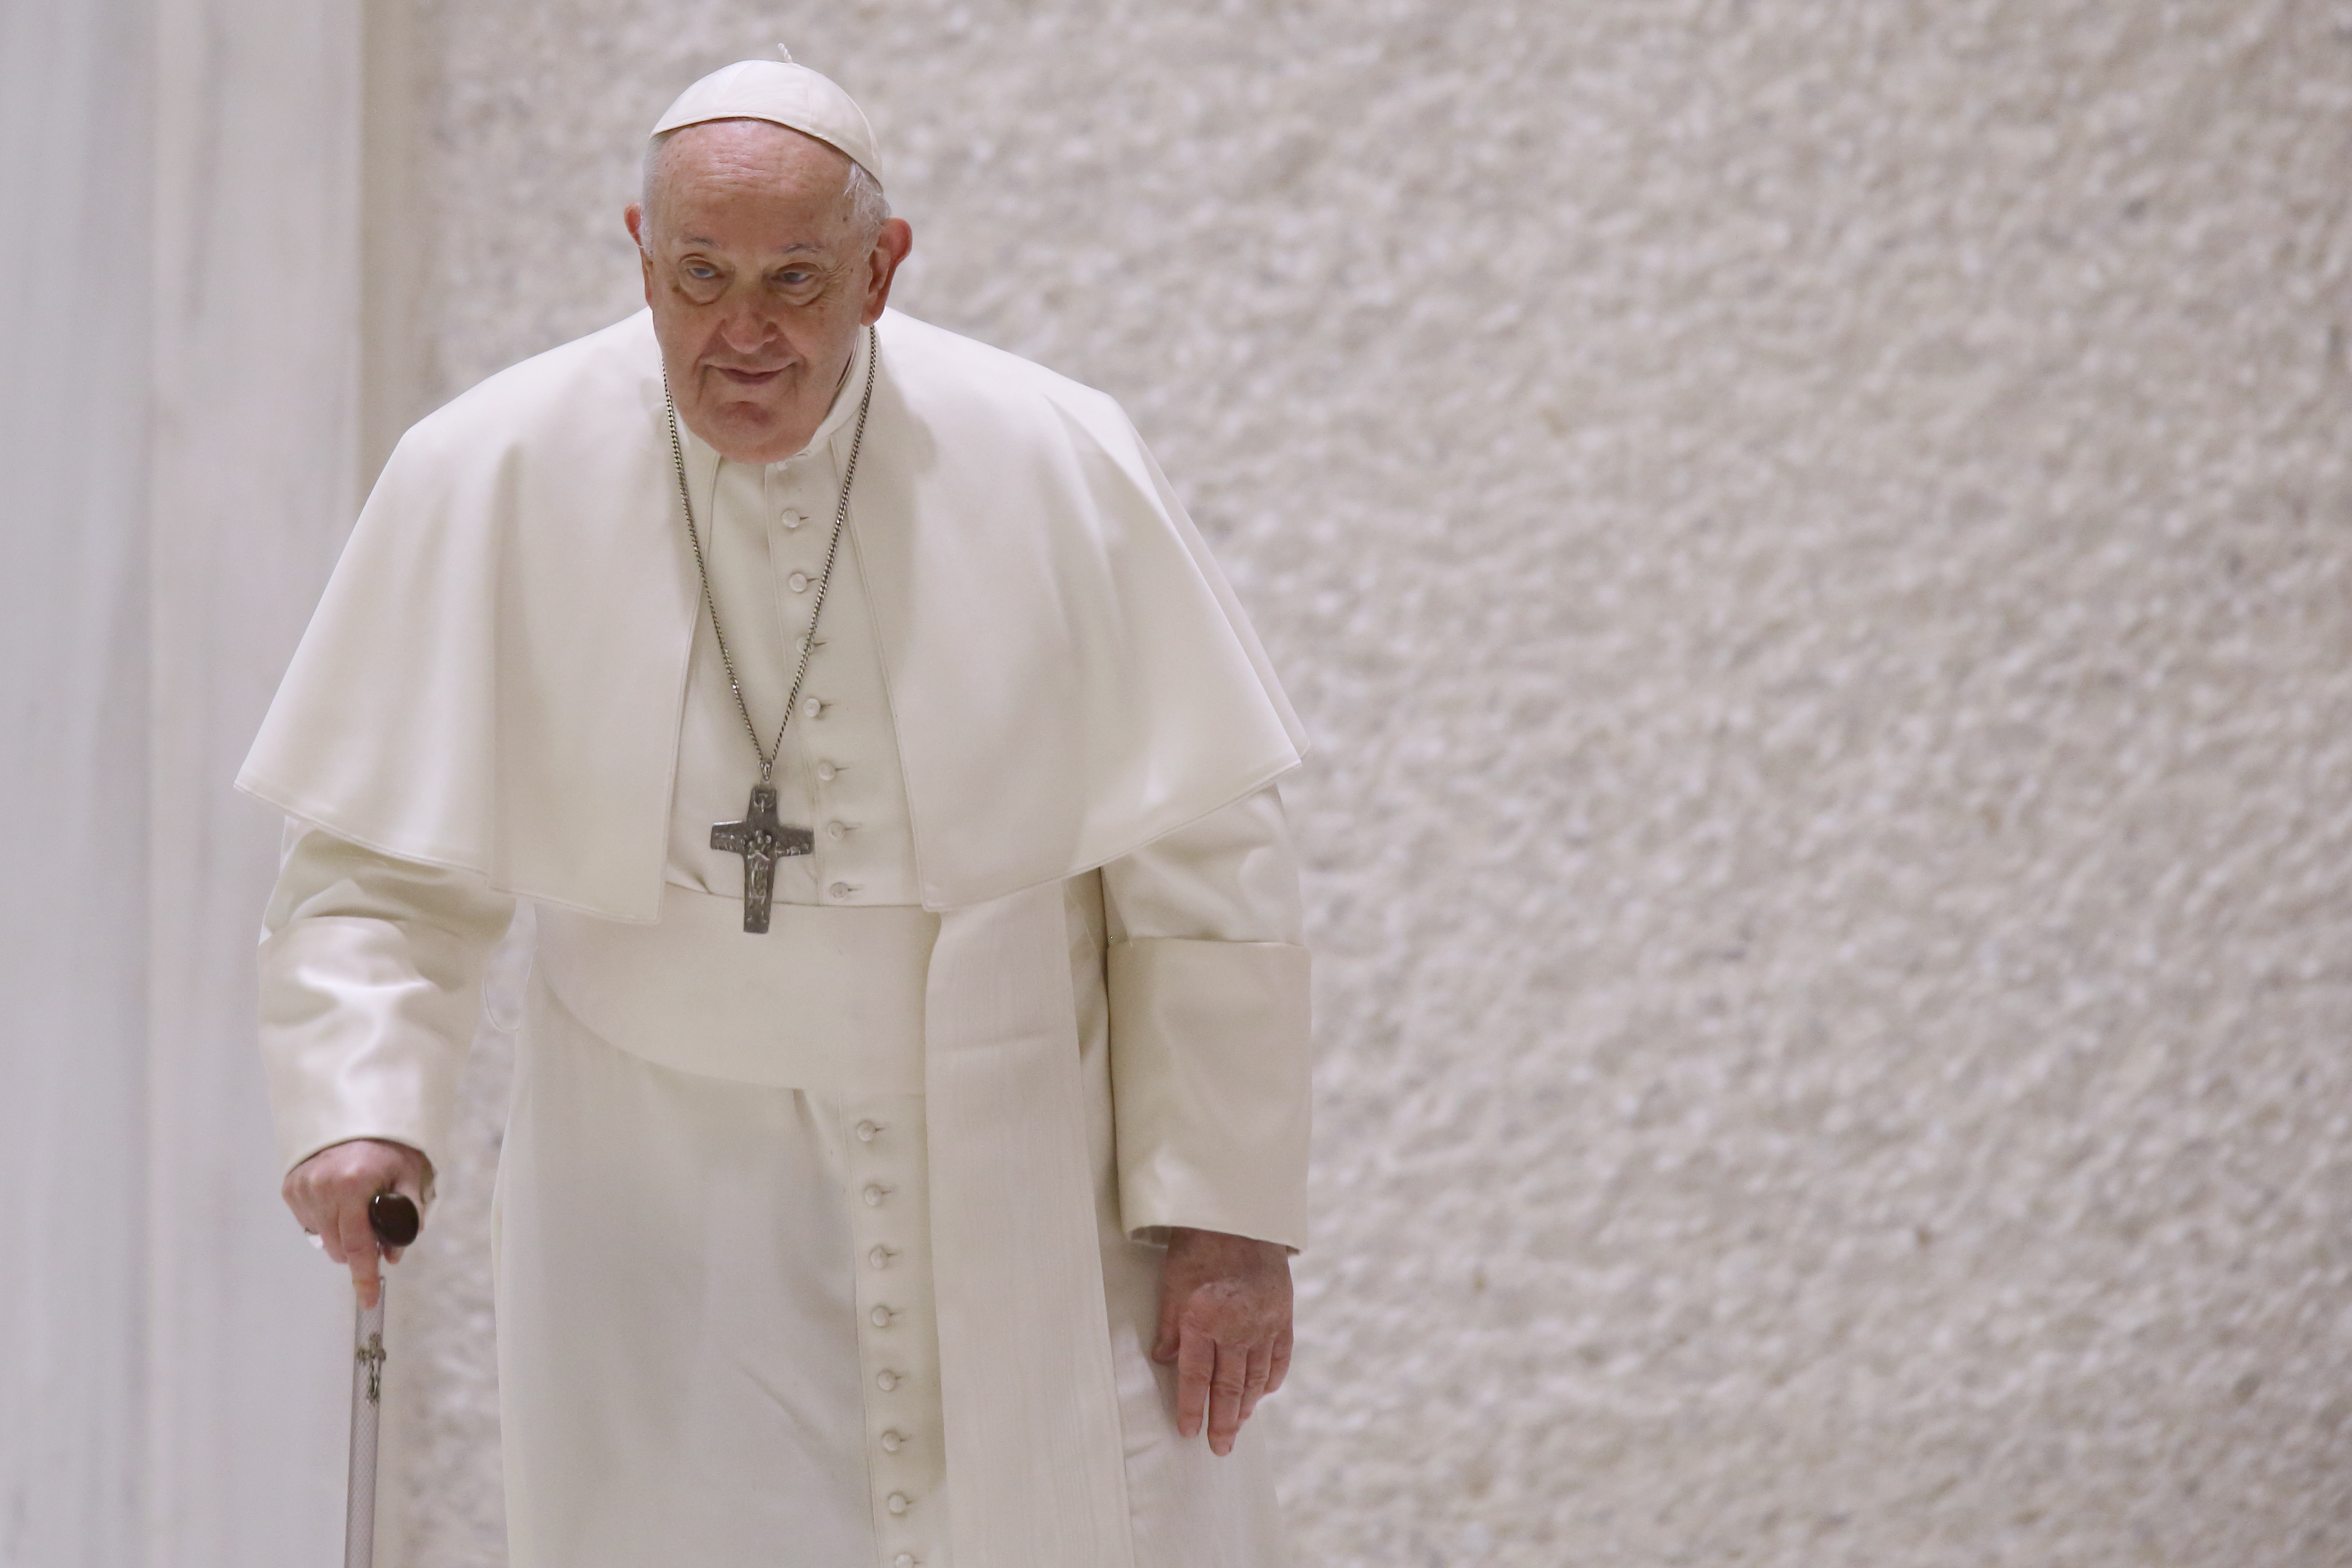 El Papa, defiende de bendecir las parejas homosexuales: "Cuando no se aceptan, es porque no se entienden"